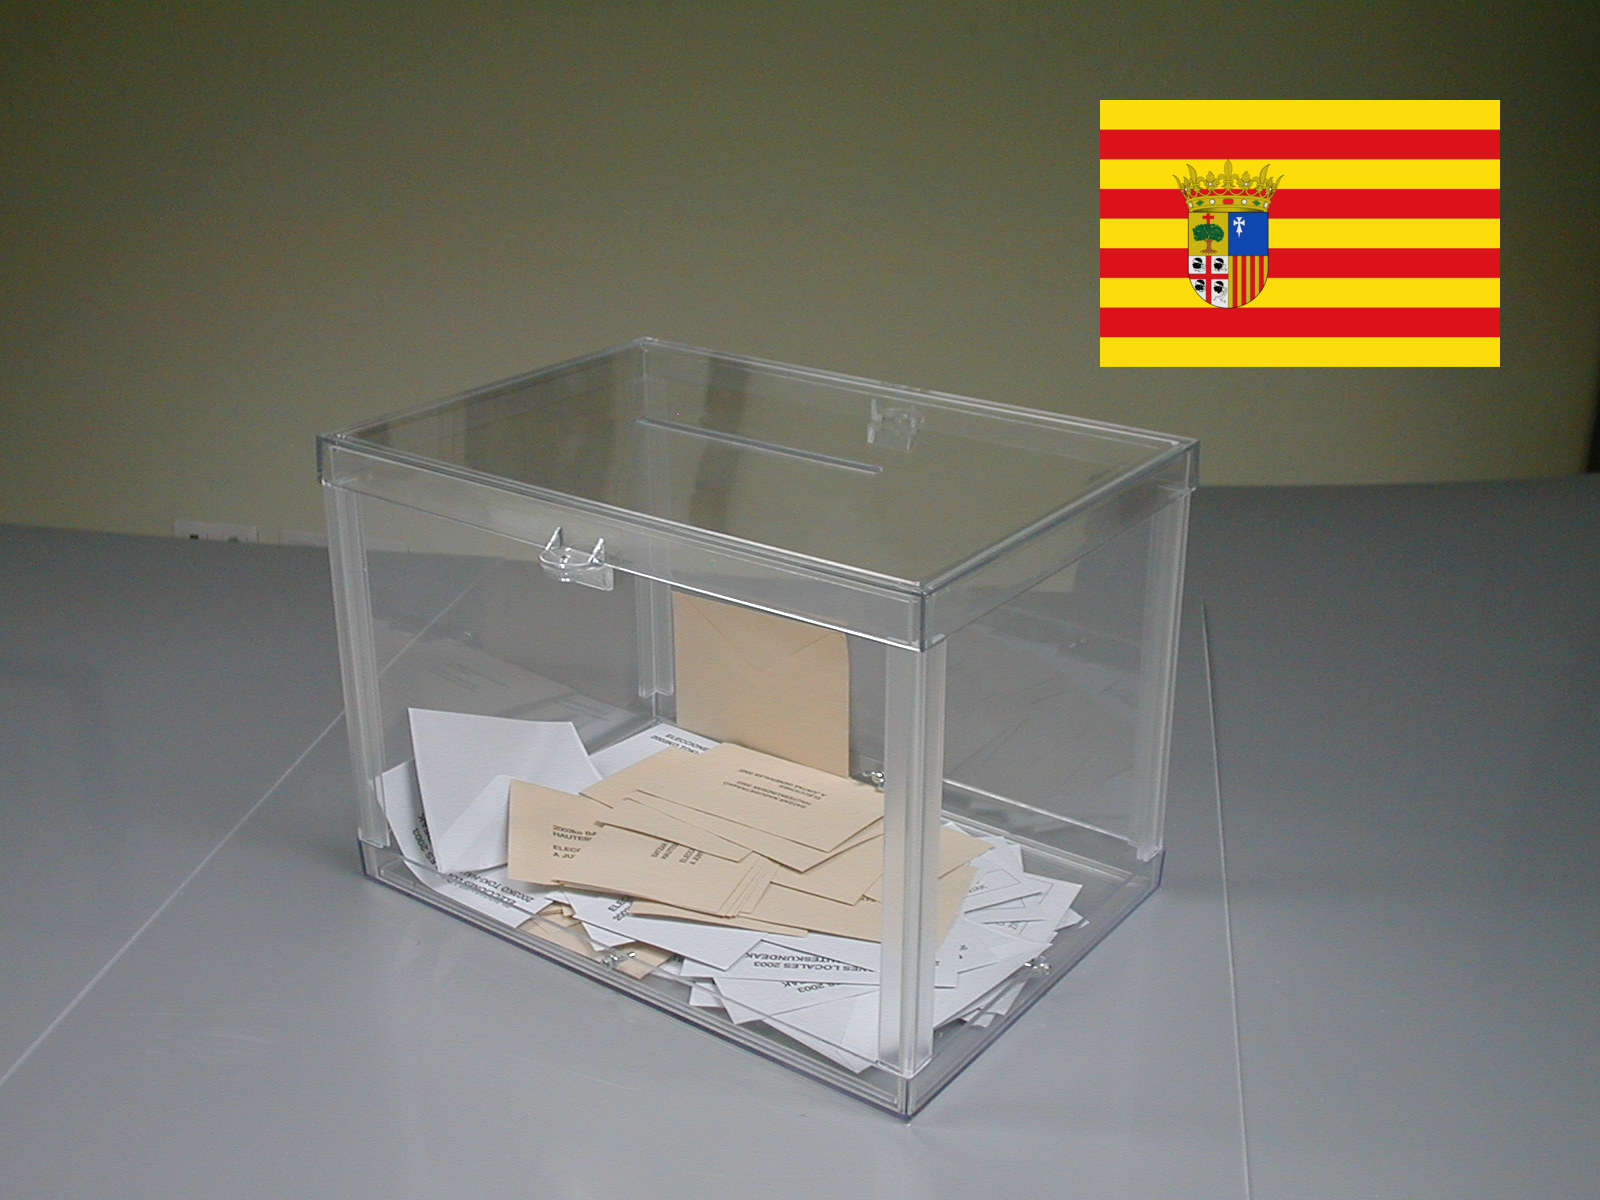 Elecciones Aragón